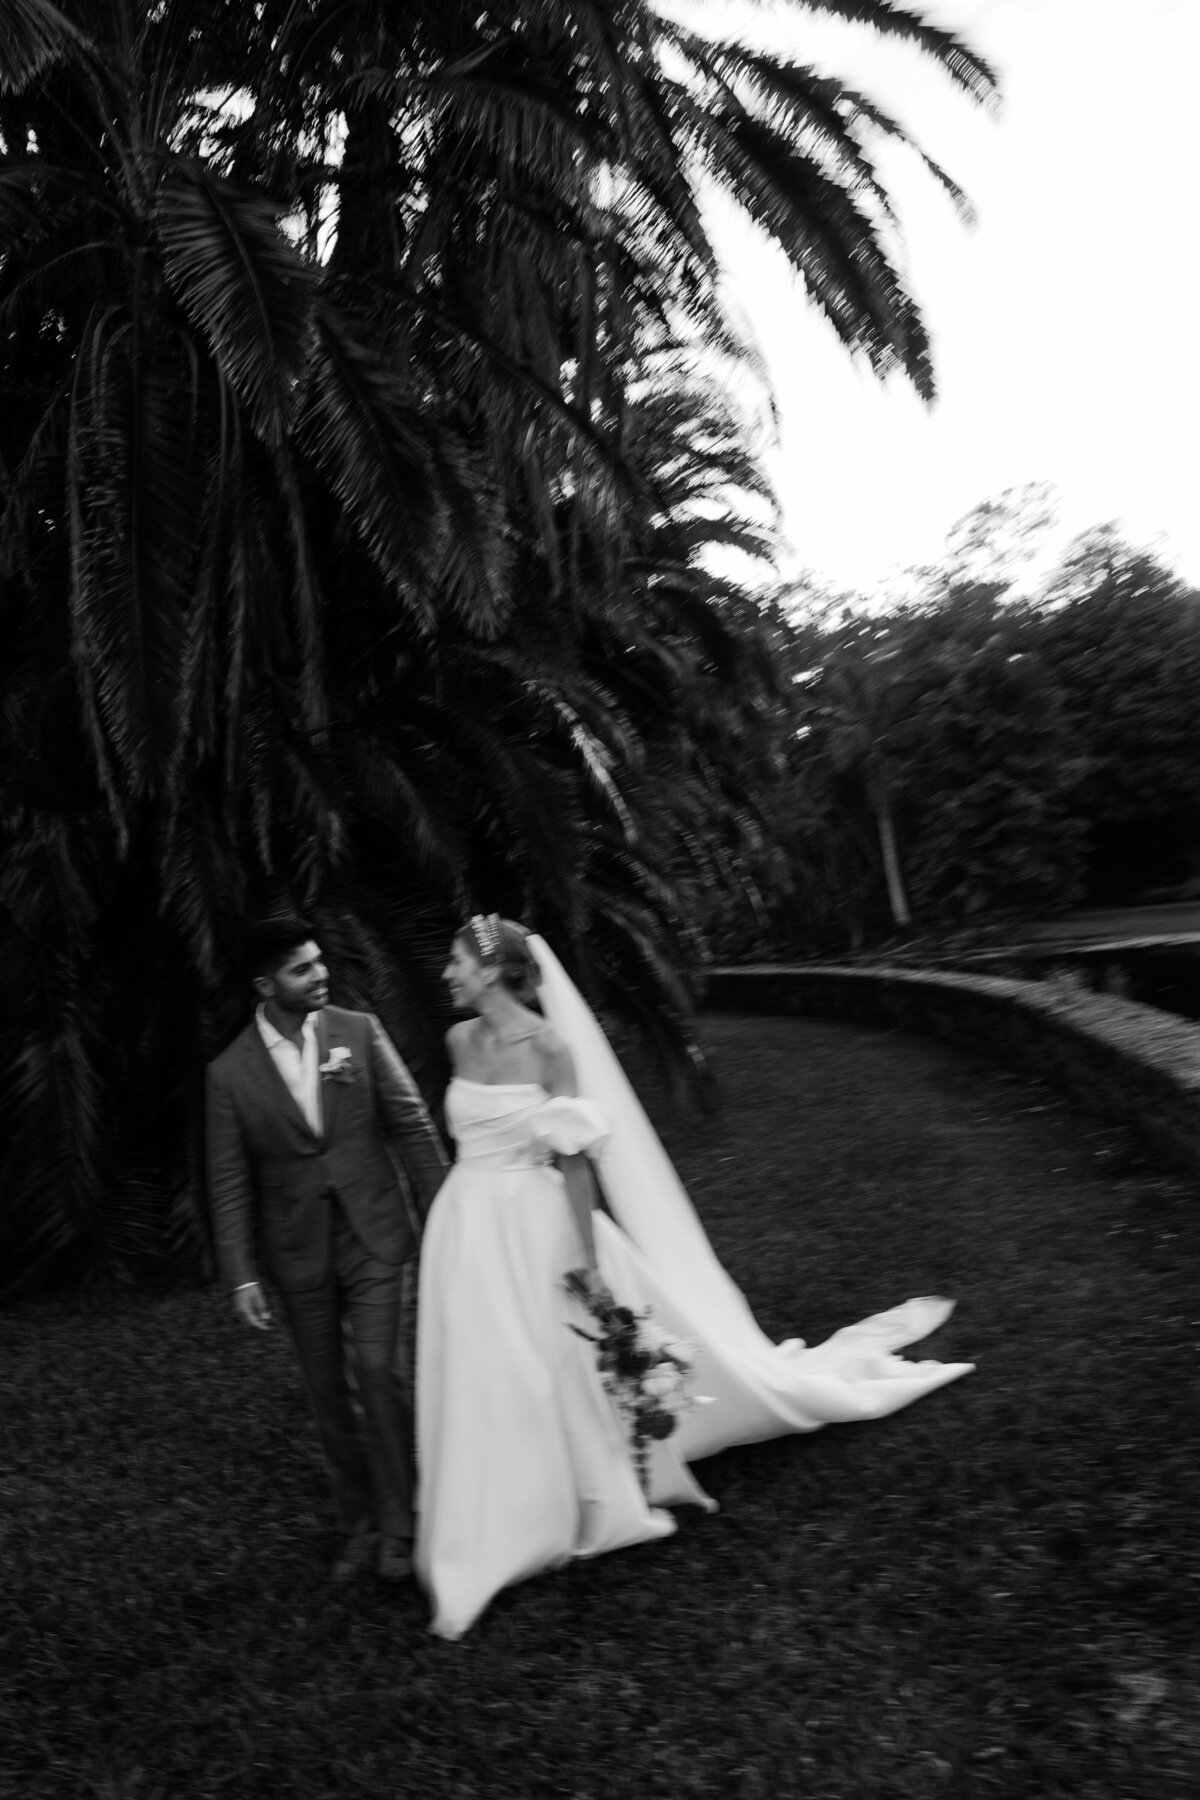 fairchild-botanical-garden-anti-bride-wedding-miami-florida-236